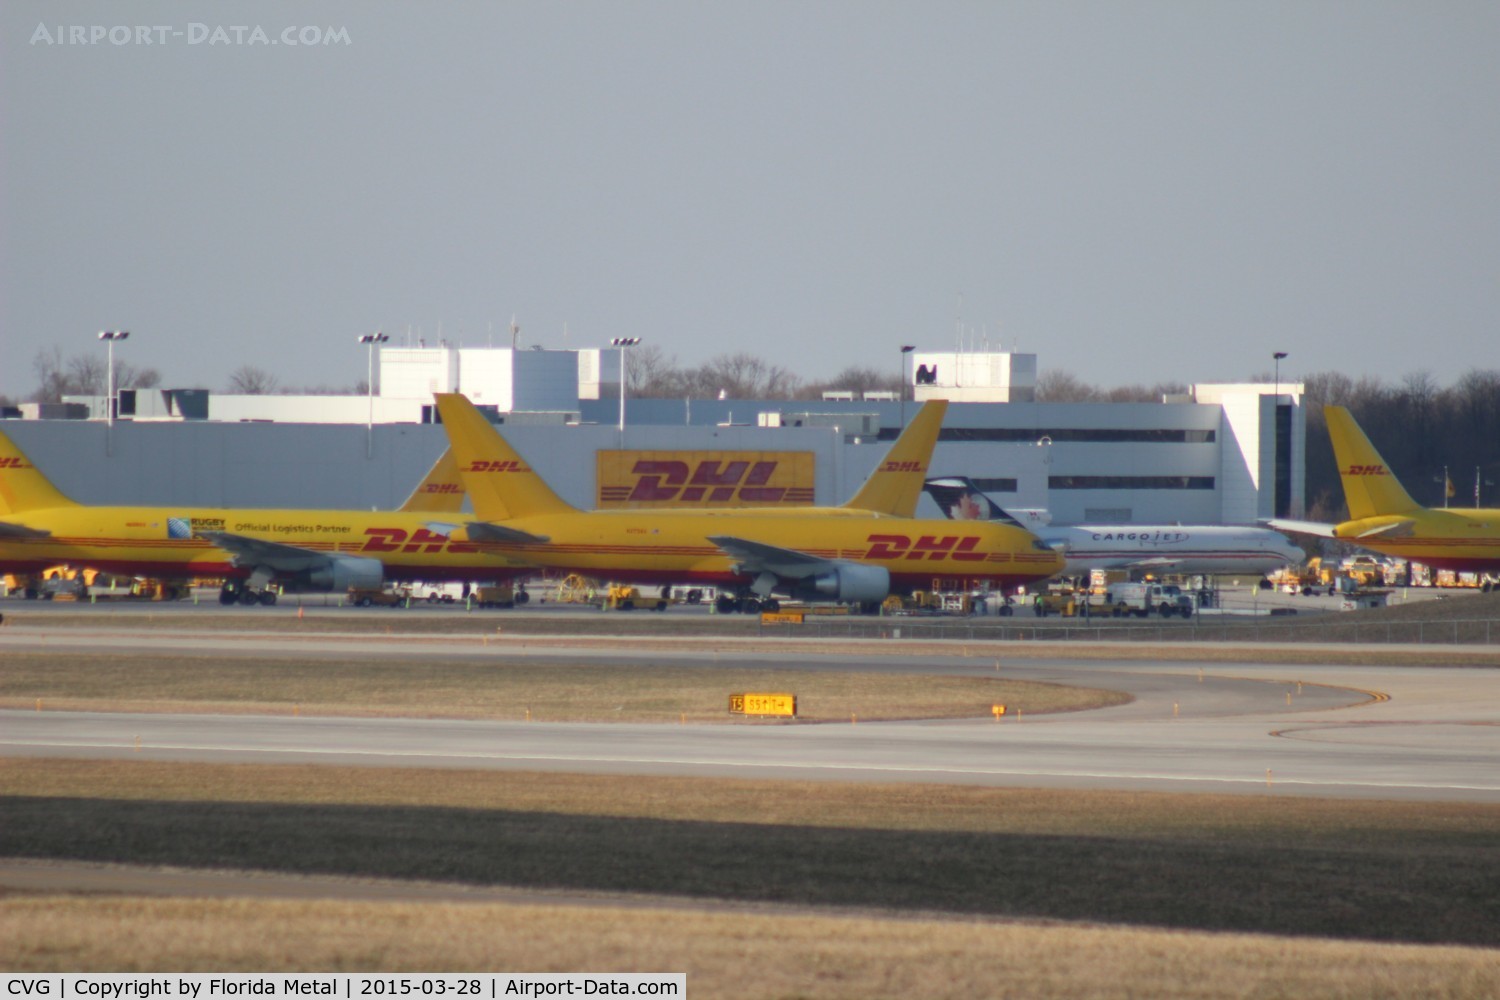 Cincinnati/northern Kentucky International Airport (CVG) - DHL Aircraft